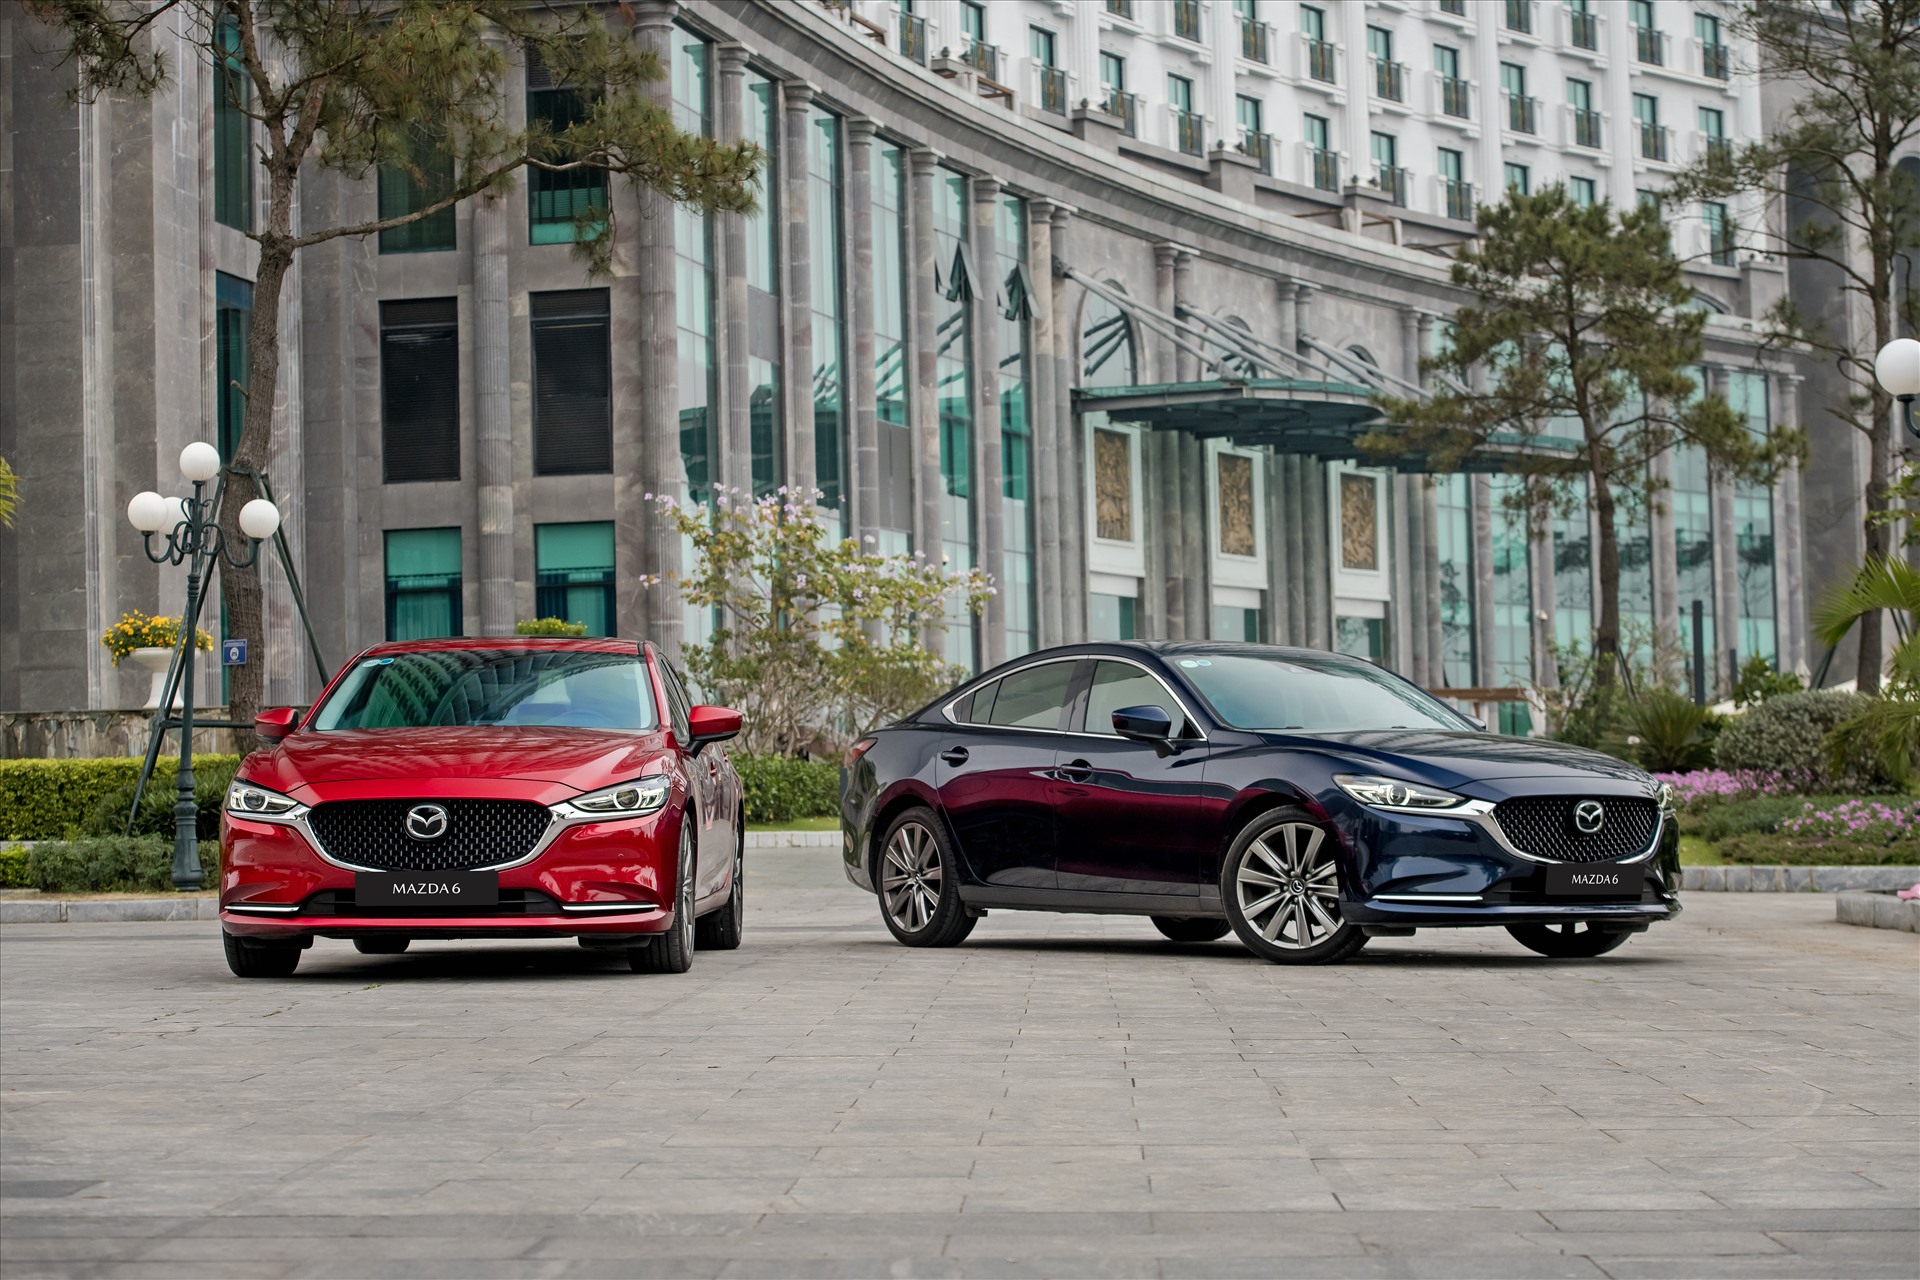 Mazda, thương hiệu xe đến từ Nhật Bản được Thaco Auto lắp ráp và phân phối, được giảm 50% lệ phí trước bạ từ ngày 1/7. Ảnh: Thaco Auto